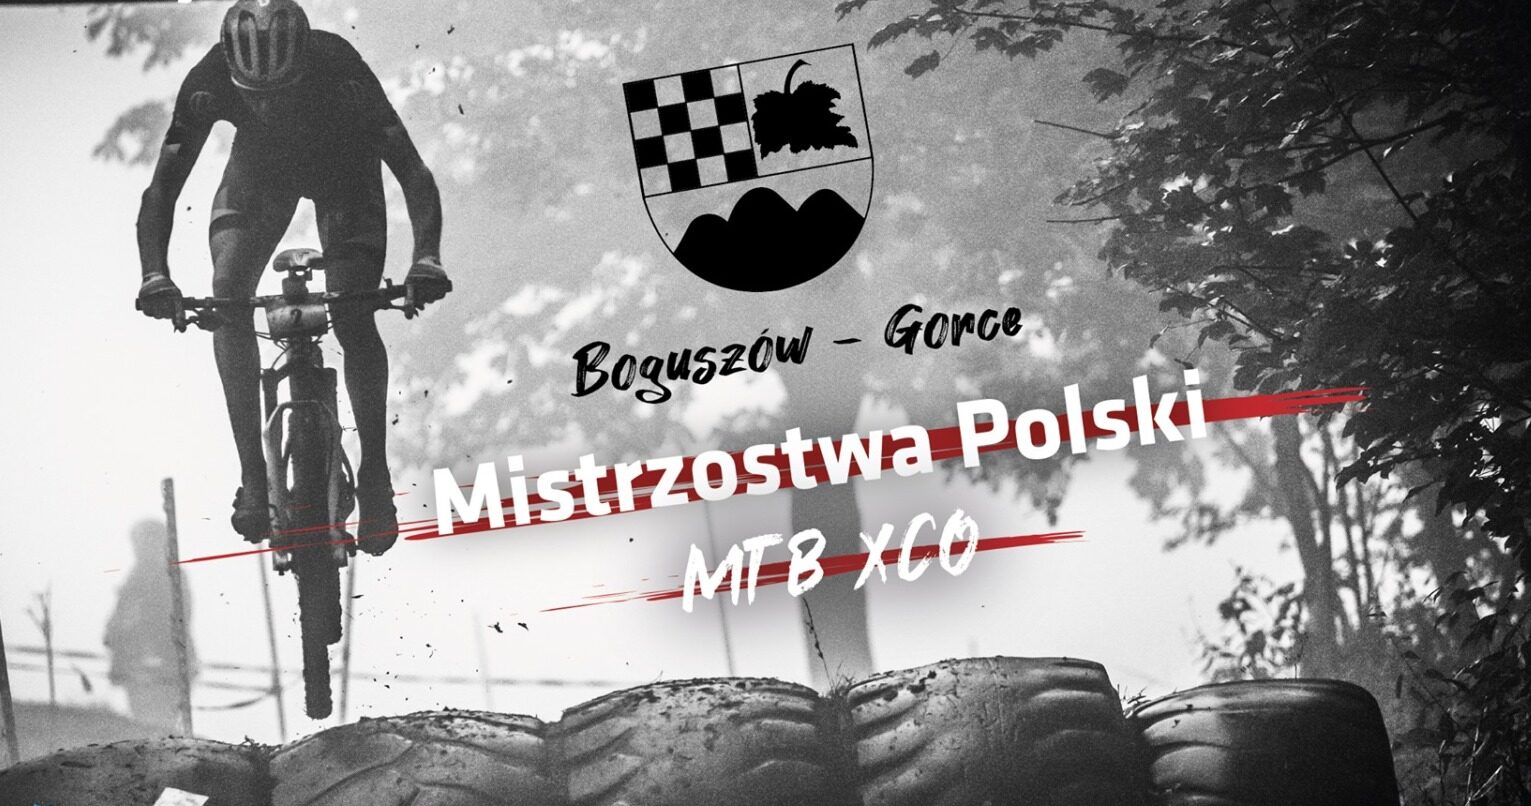 MP XCR 2021, Boguszów-Gorce – KS Luboń Skomielna Biała najlepszą sztafetą!